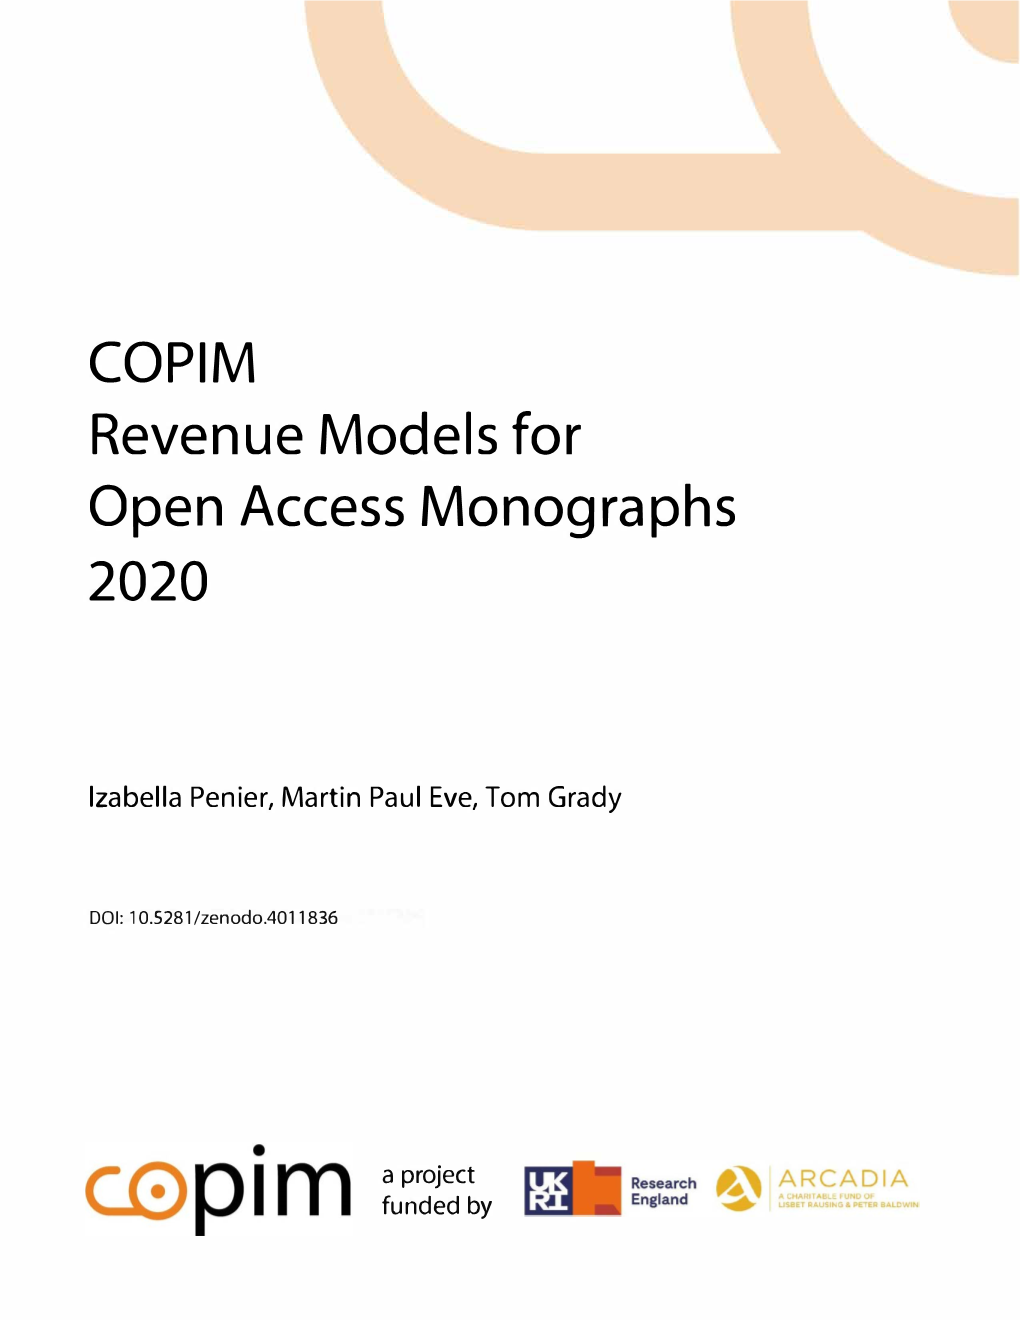 COPIM Revenue Models for Open Access Monographs 2020